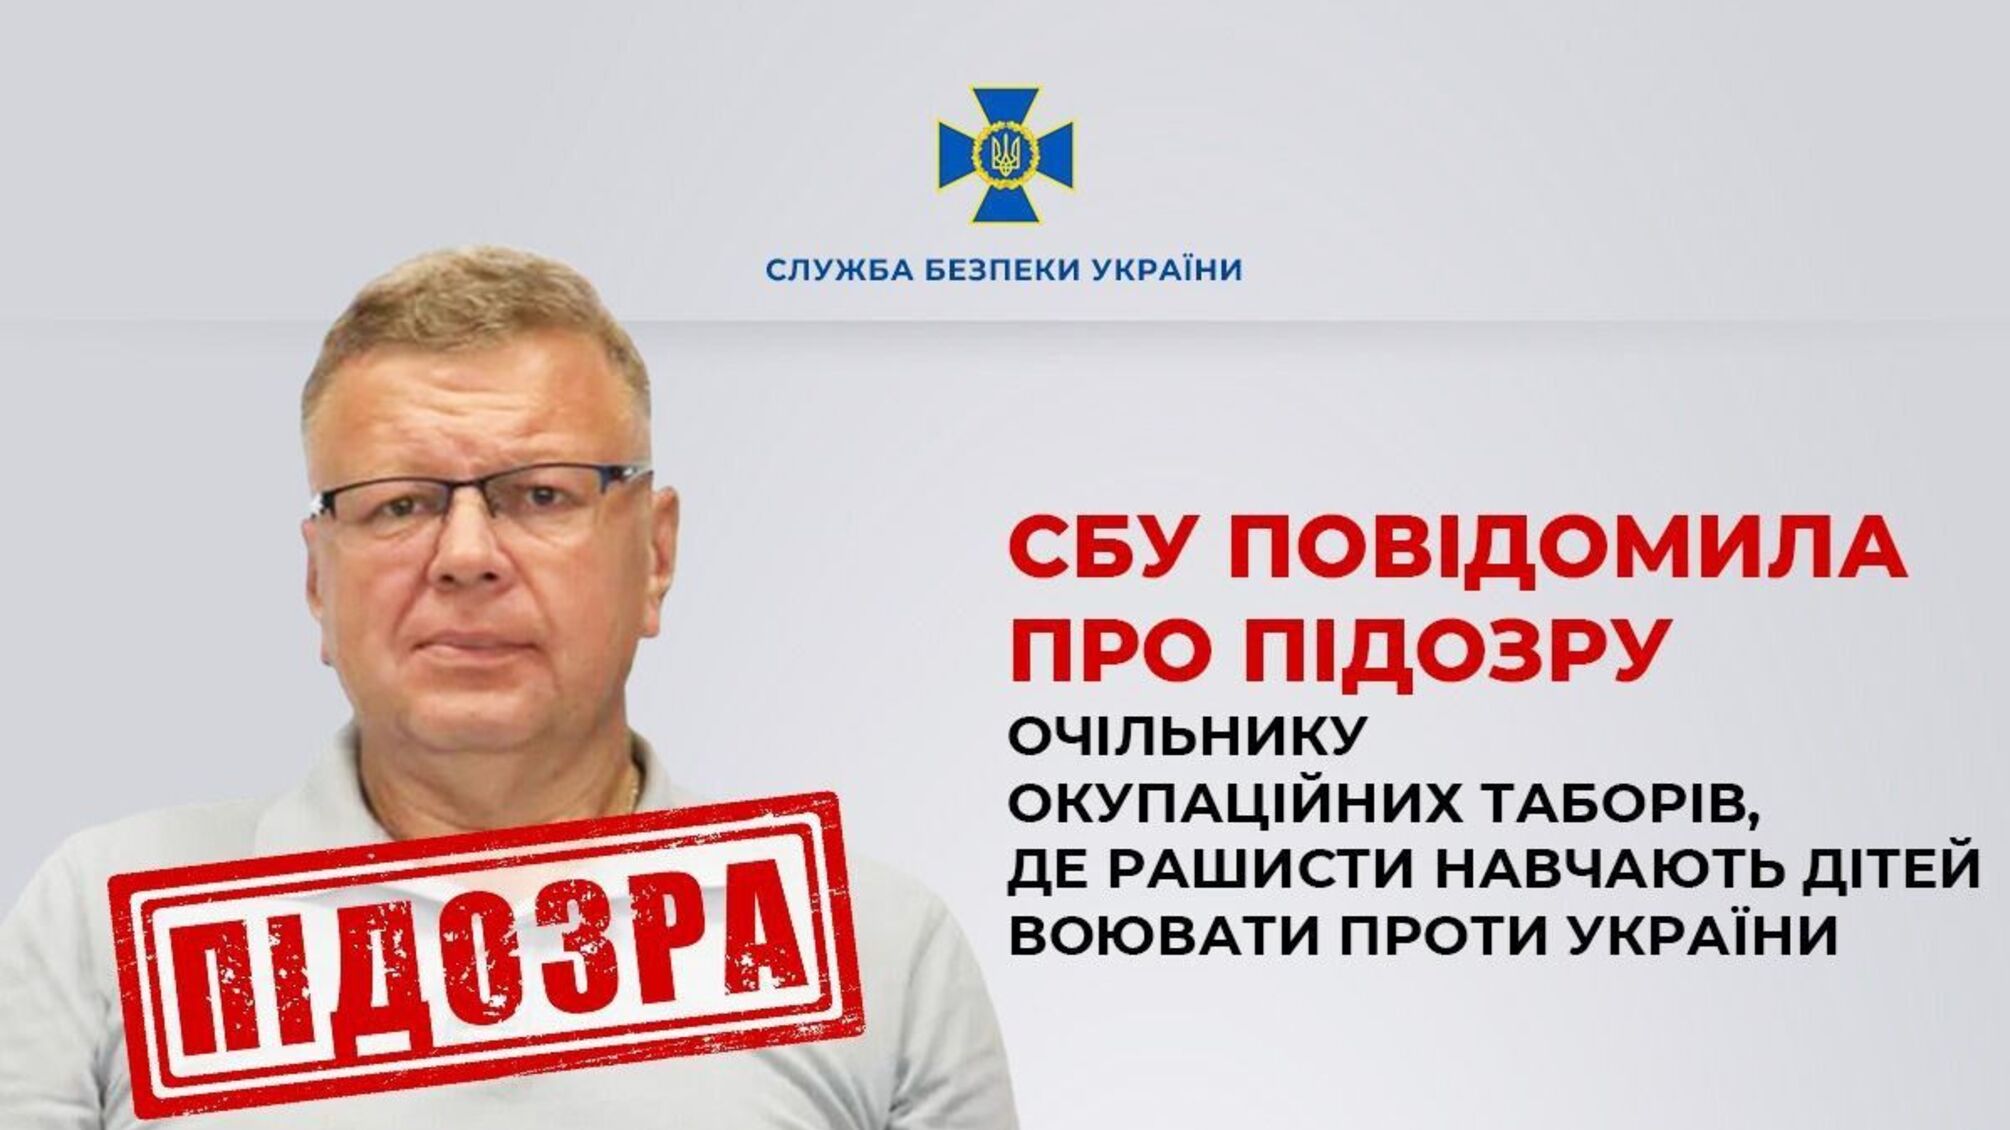 СБУ повідомила про підозру очільнику окупаційних таборів, де рашисти навчають дітей воювати проти України